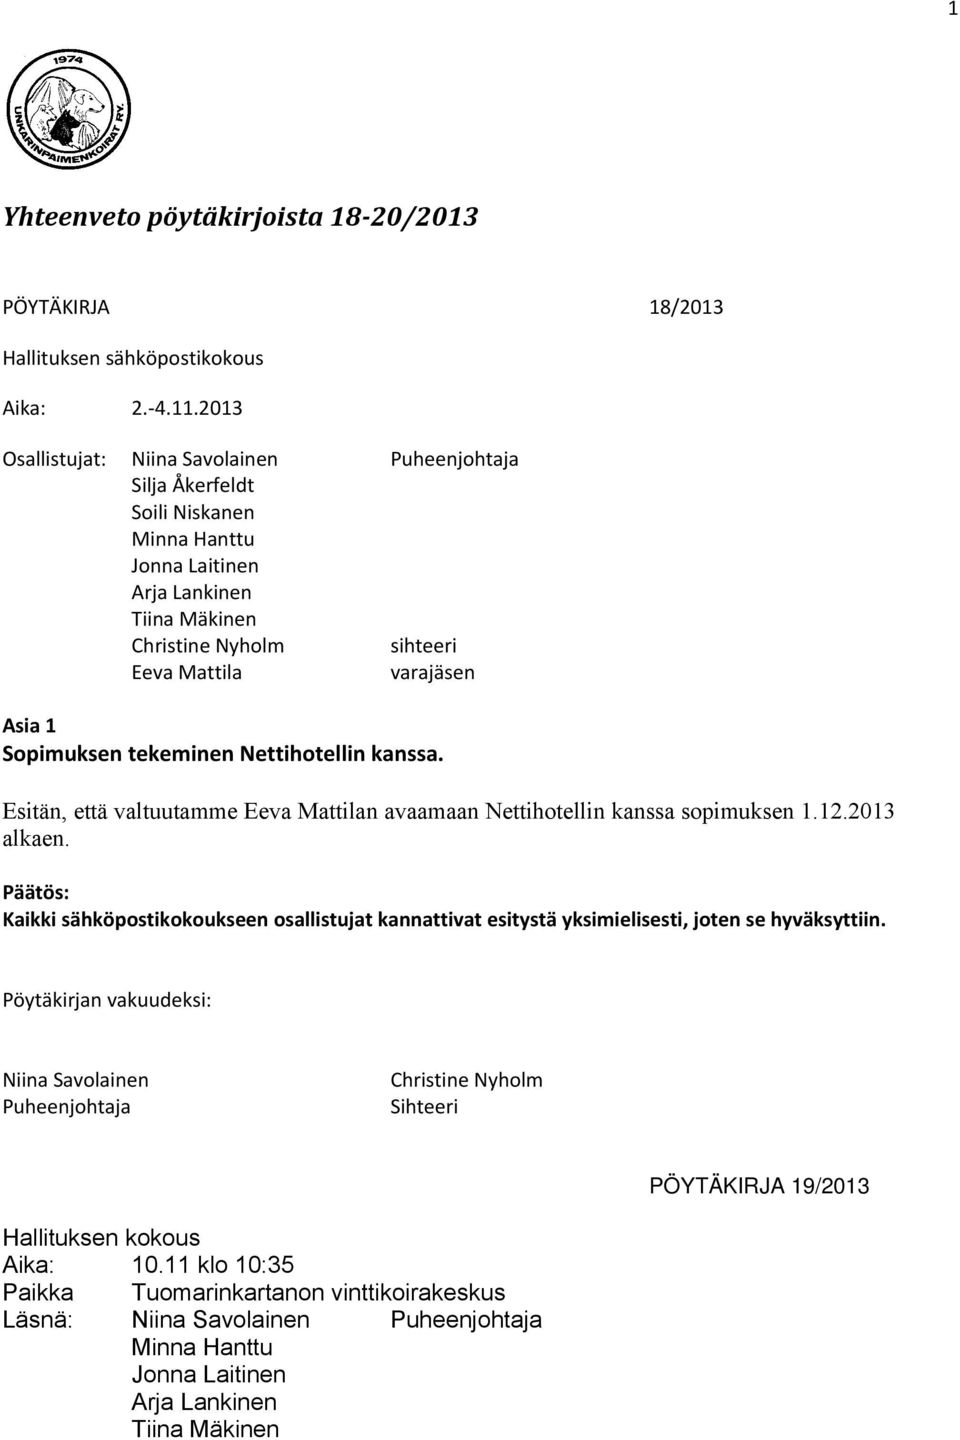 Esitän, että valtuutamme Eeva Mattilan avaamaan Nettihotellin kanssa sopimuksen 1.12.2013 alkaen.